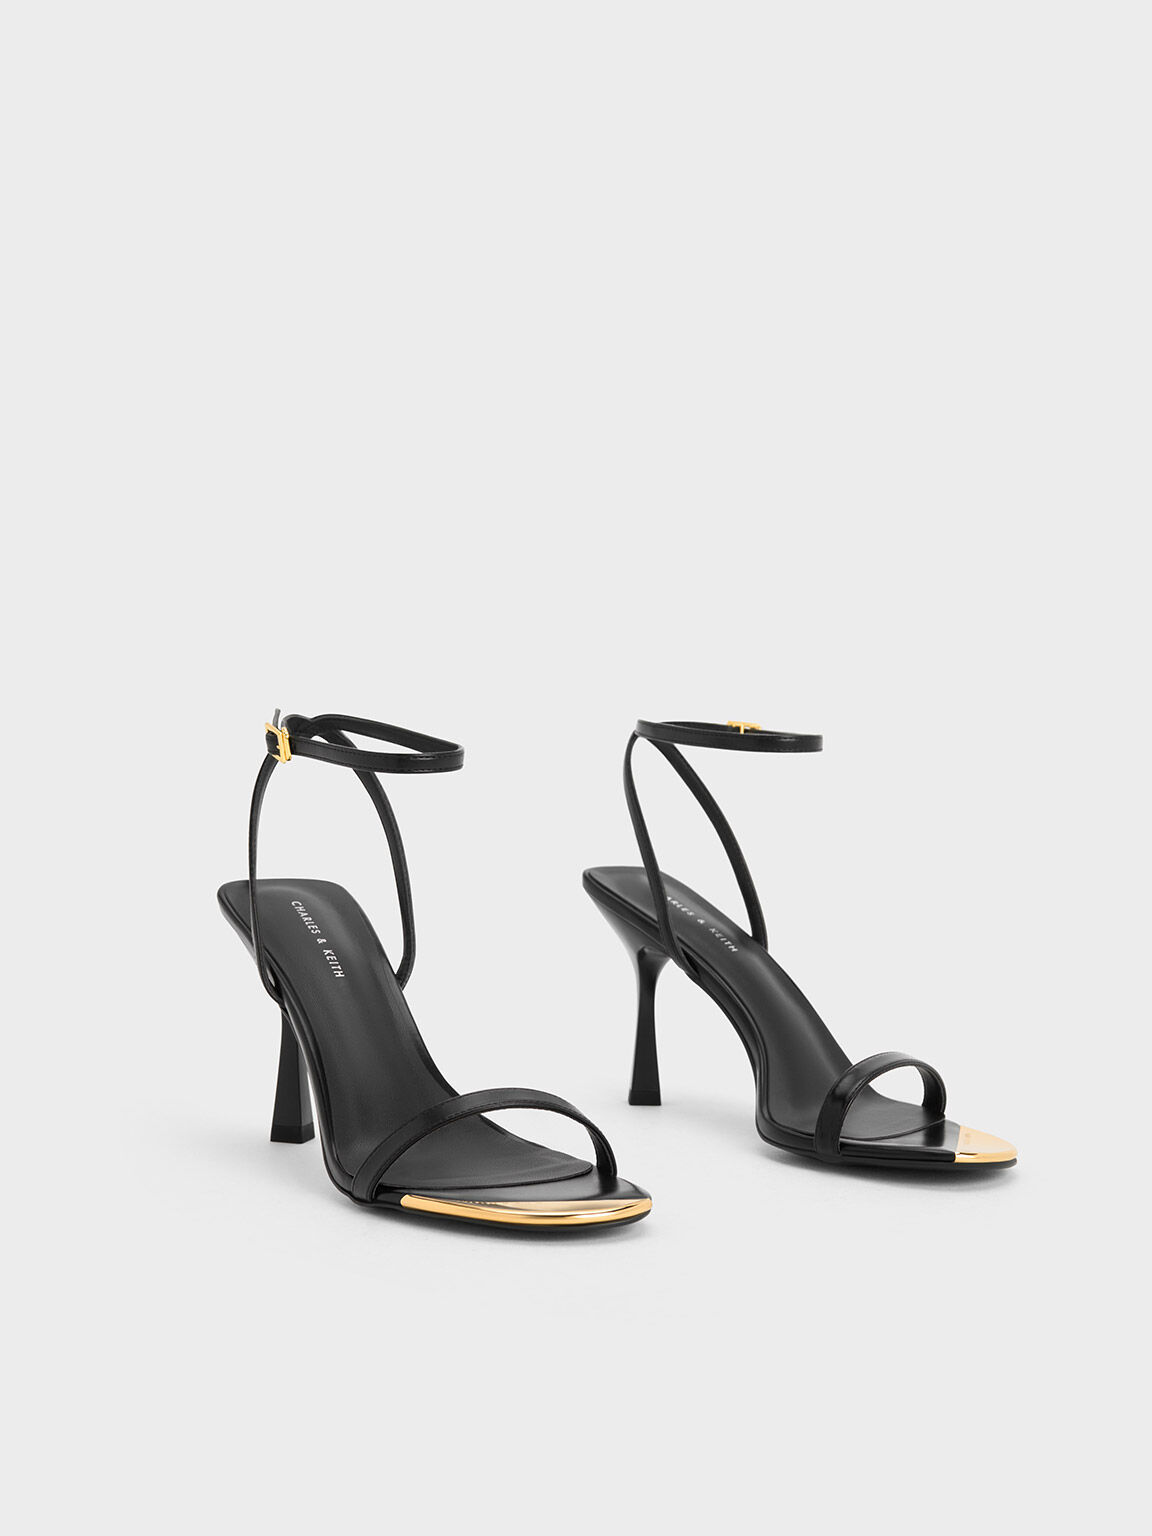 Ladies Platform Modular Heel Sandals Heels Shoes Ankle Buckle Heels  Rhinestones | eBay